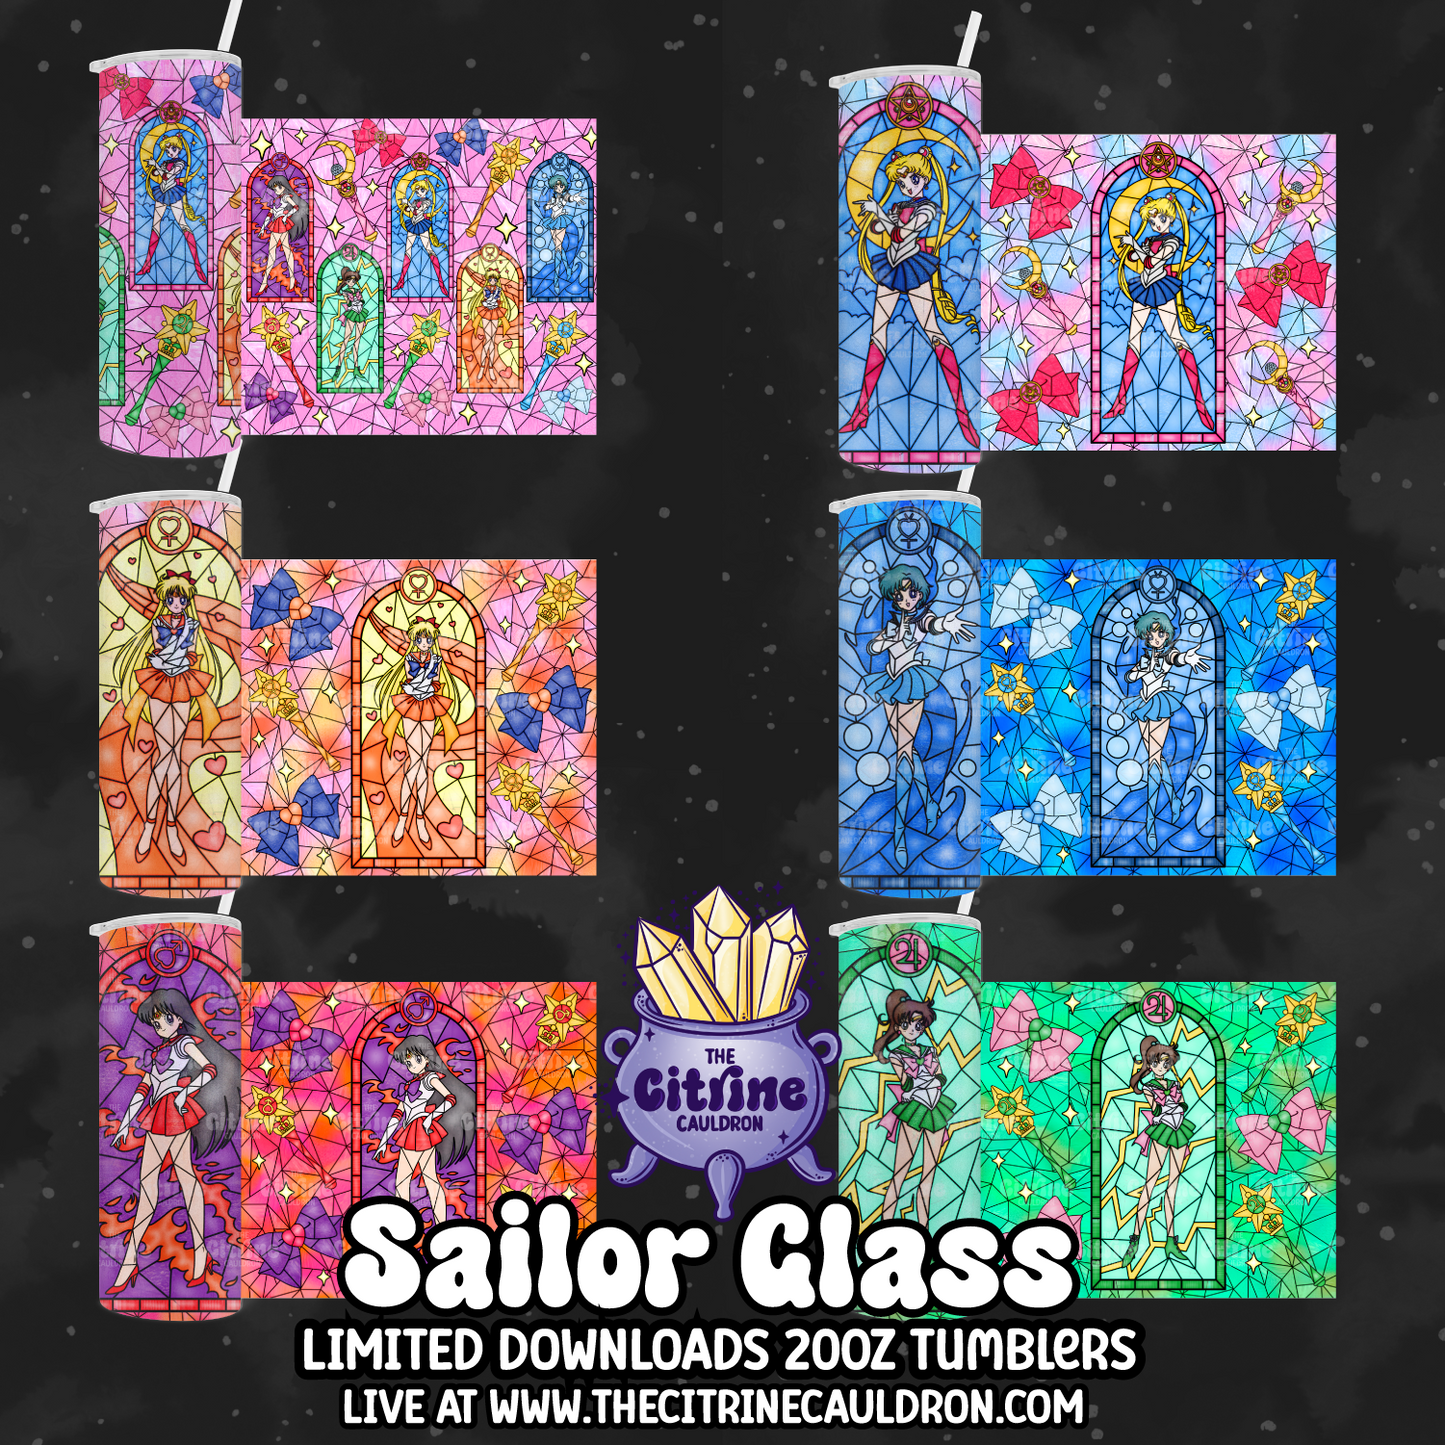 Sailor Glass Color - PNG Wrap for Sublimation 20oz Tumbler